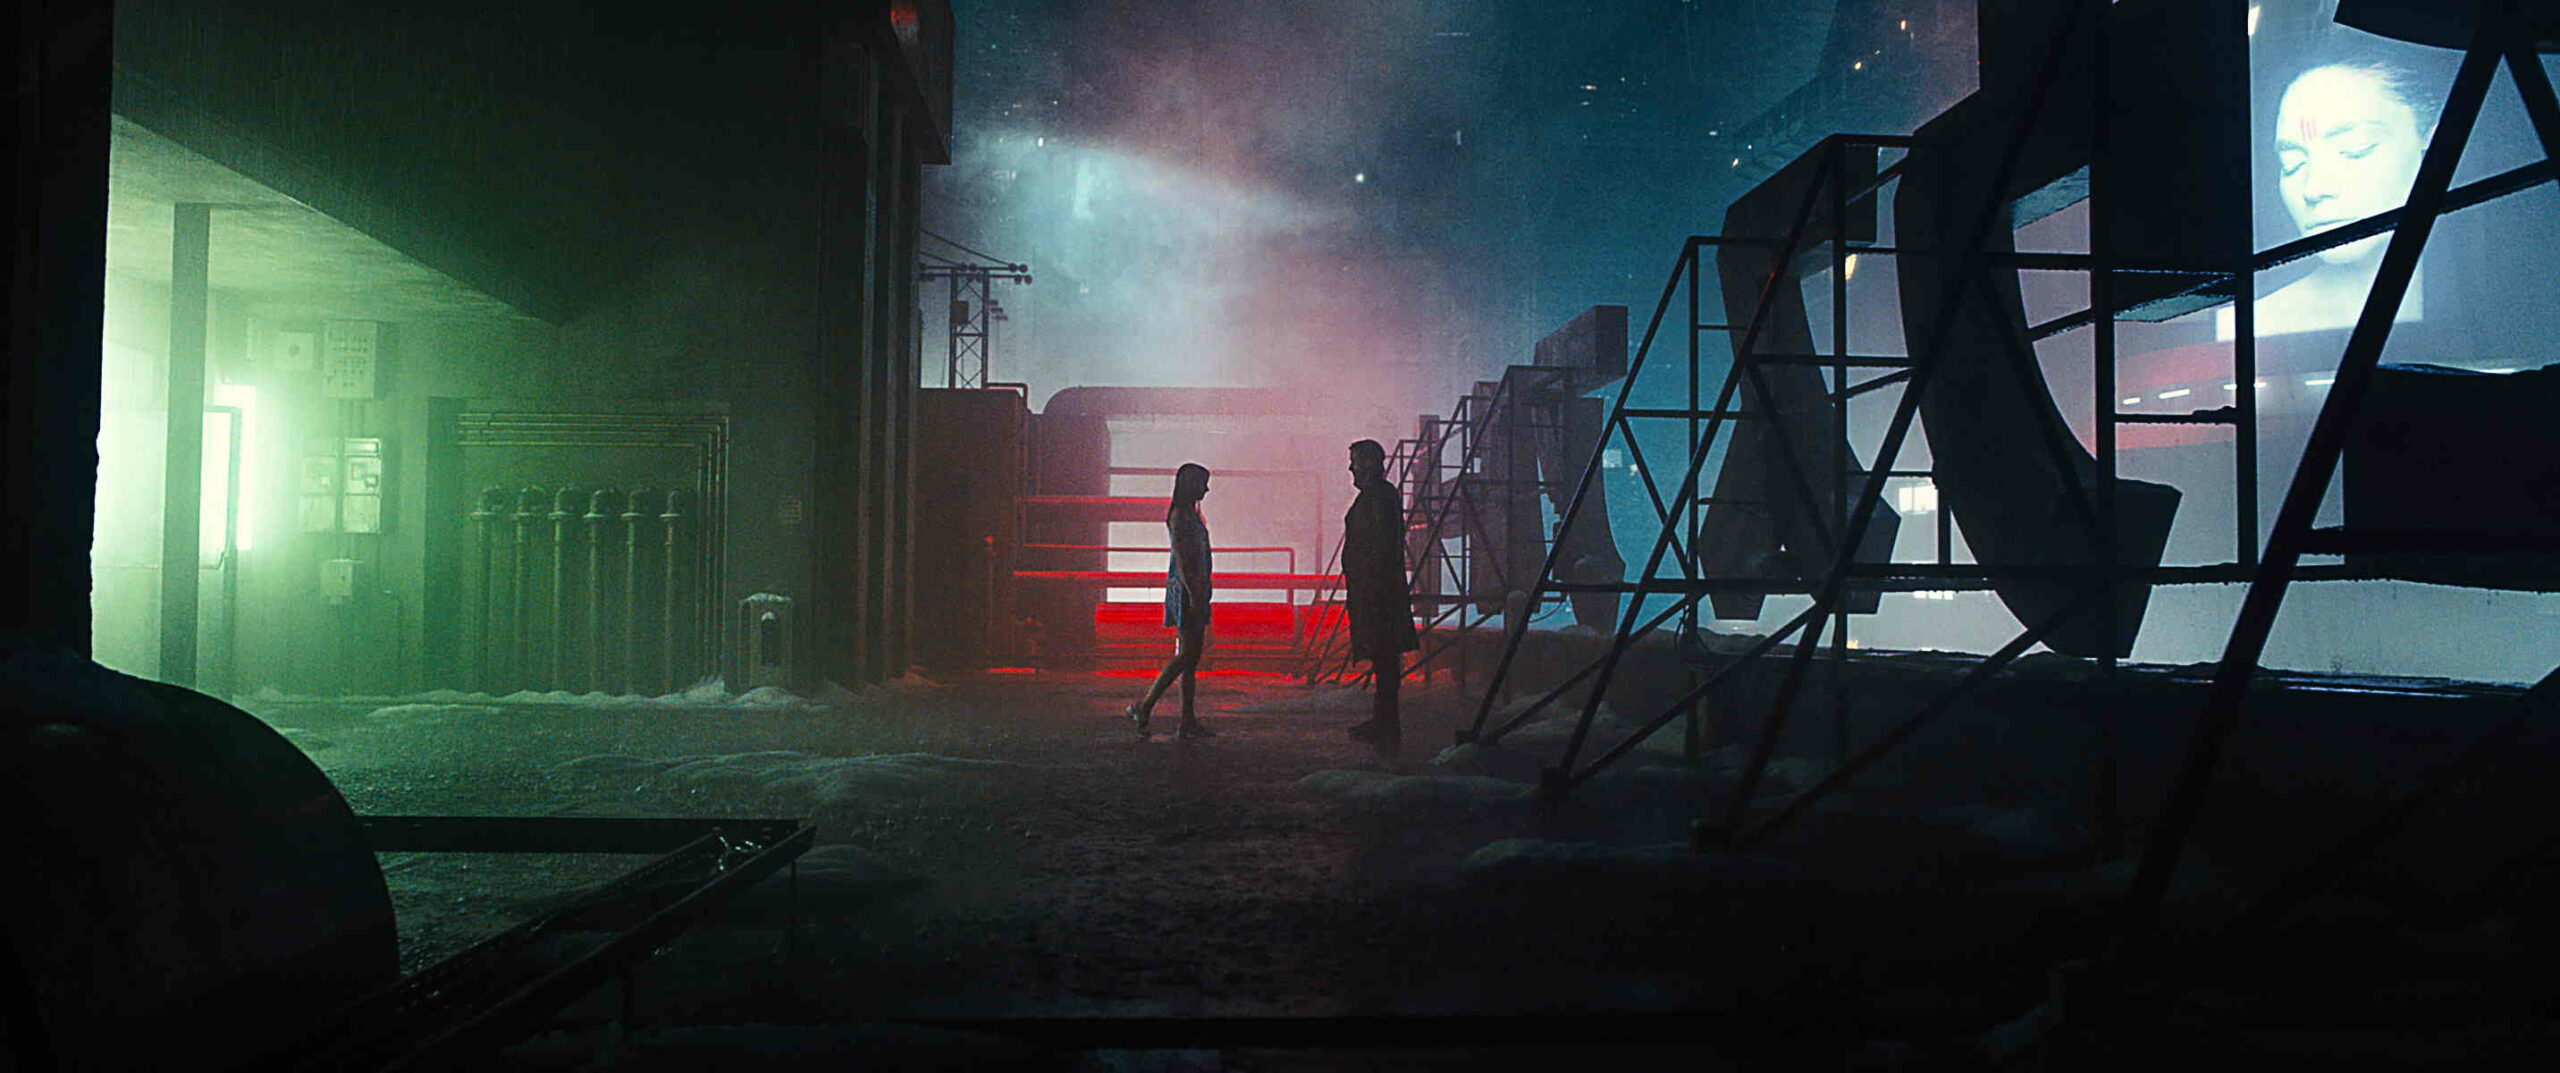 Das Bild zeigt einen Mann und eine Frau die sich gegenüber stehen. Sie sind hinter einer großen Buchstabentafel im Neon Licht